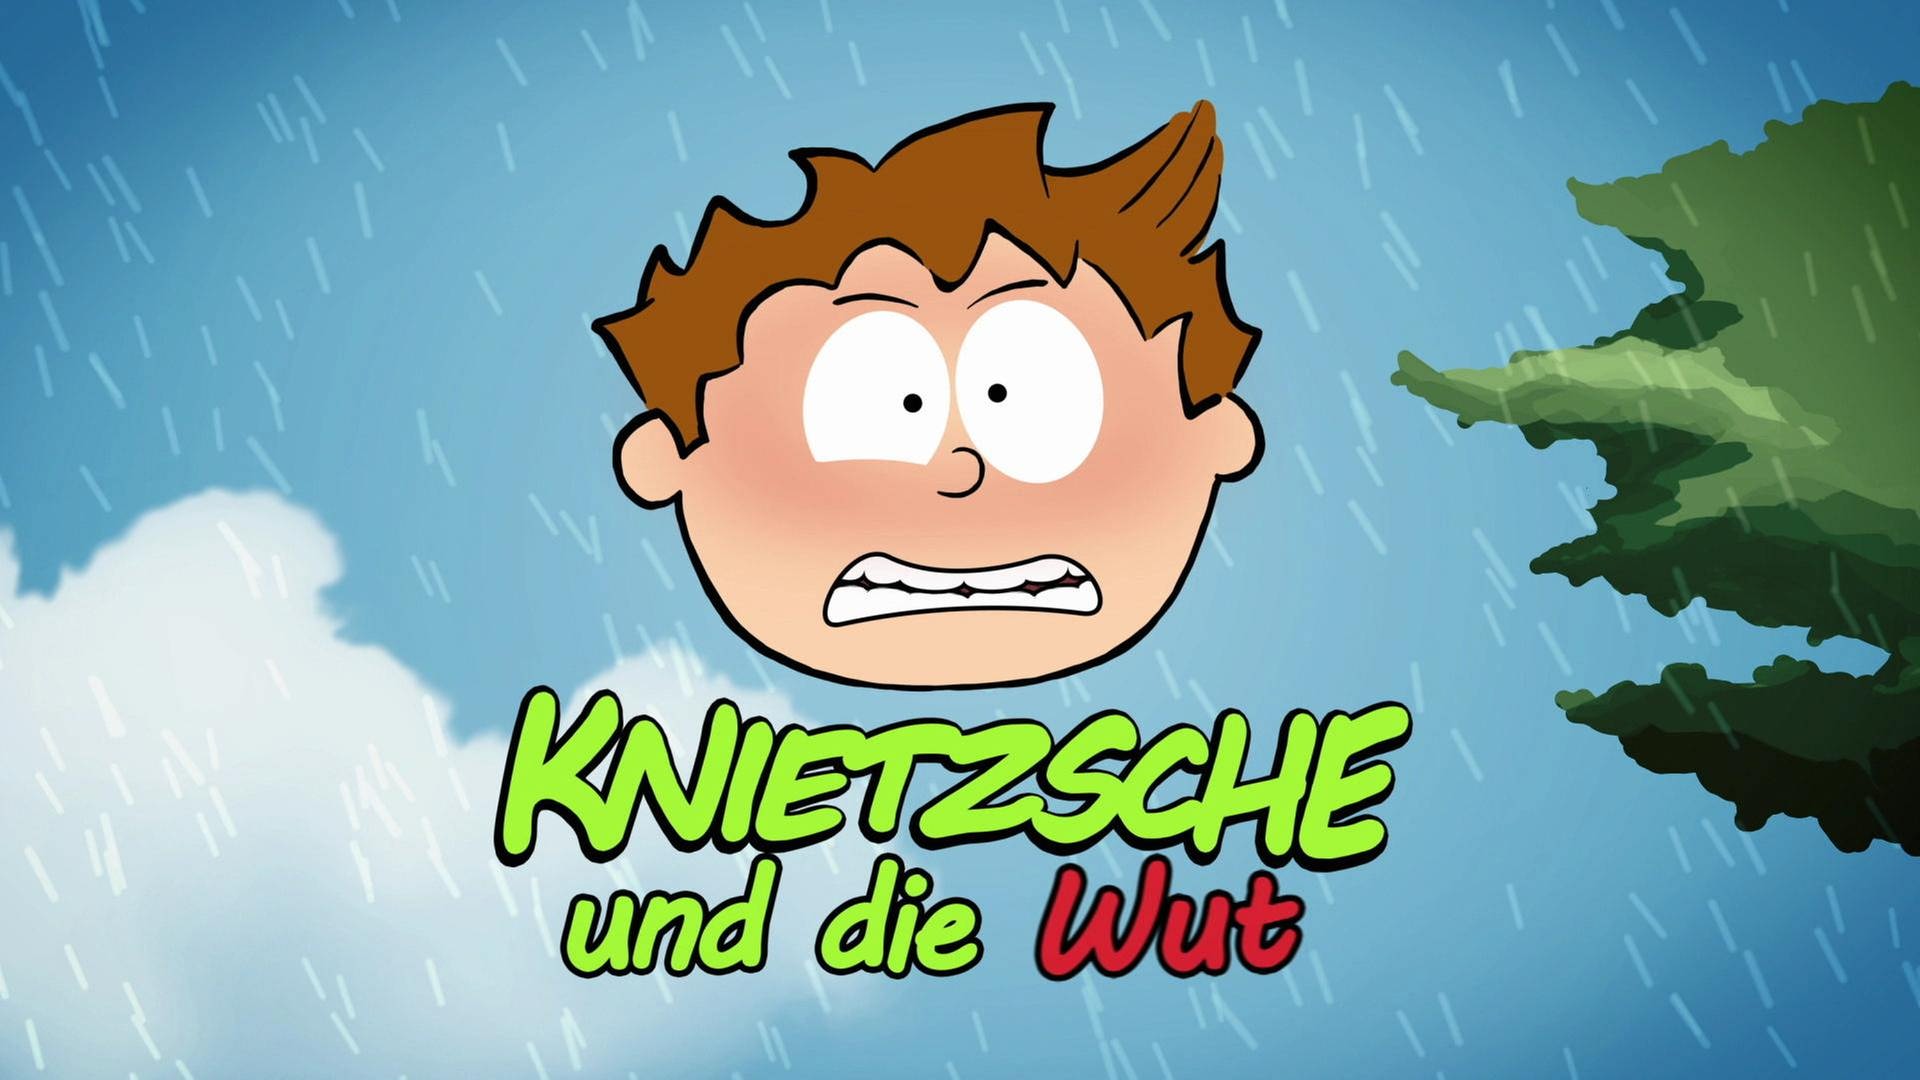 Das Gesicht von dem kleinen Philosoph Knietzsche trohnt wütend in der Luft, unter ihm der Schriftzug "Knietzsche und die Wut". (Foto: vision X/WDR)